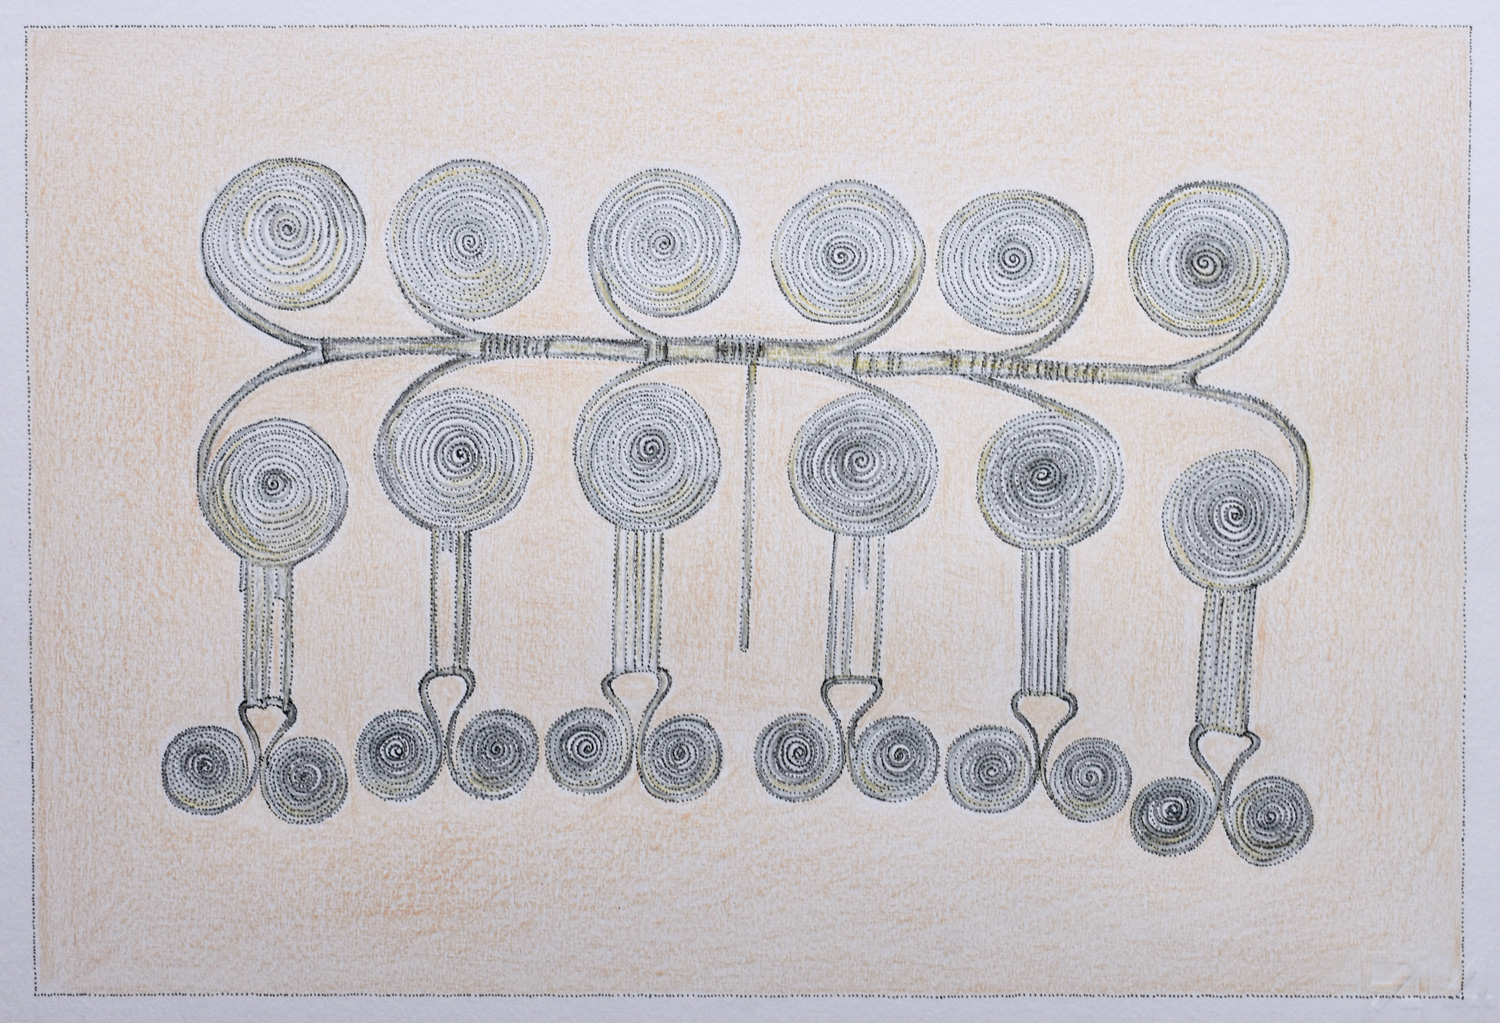  Pettorale a dodici spirali, disegno di Anna Maragno, non riprodurre senza autorizzazione